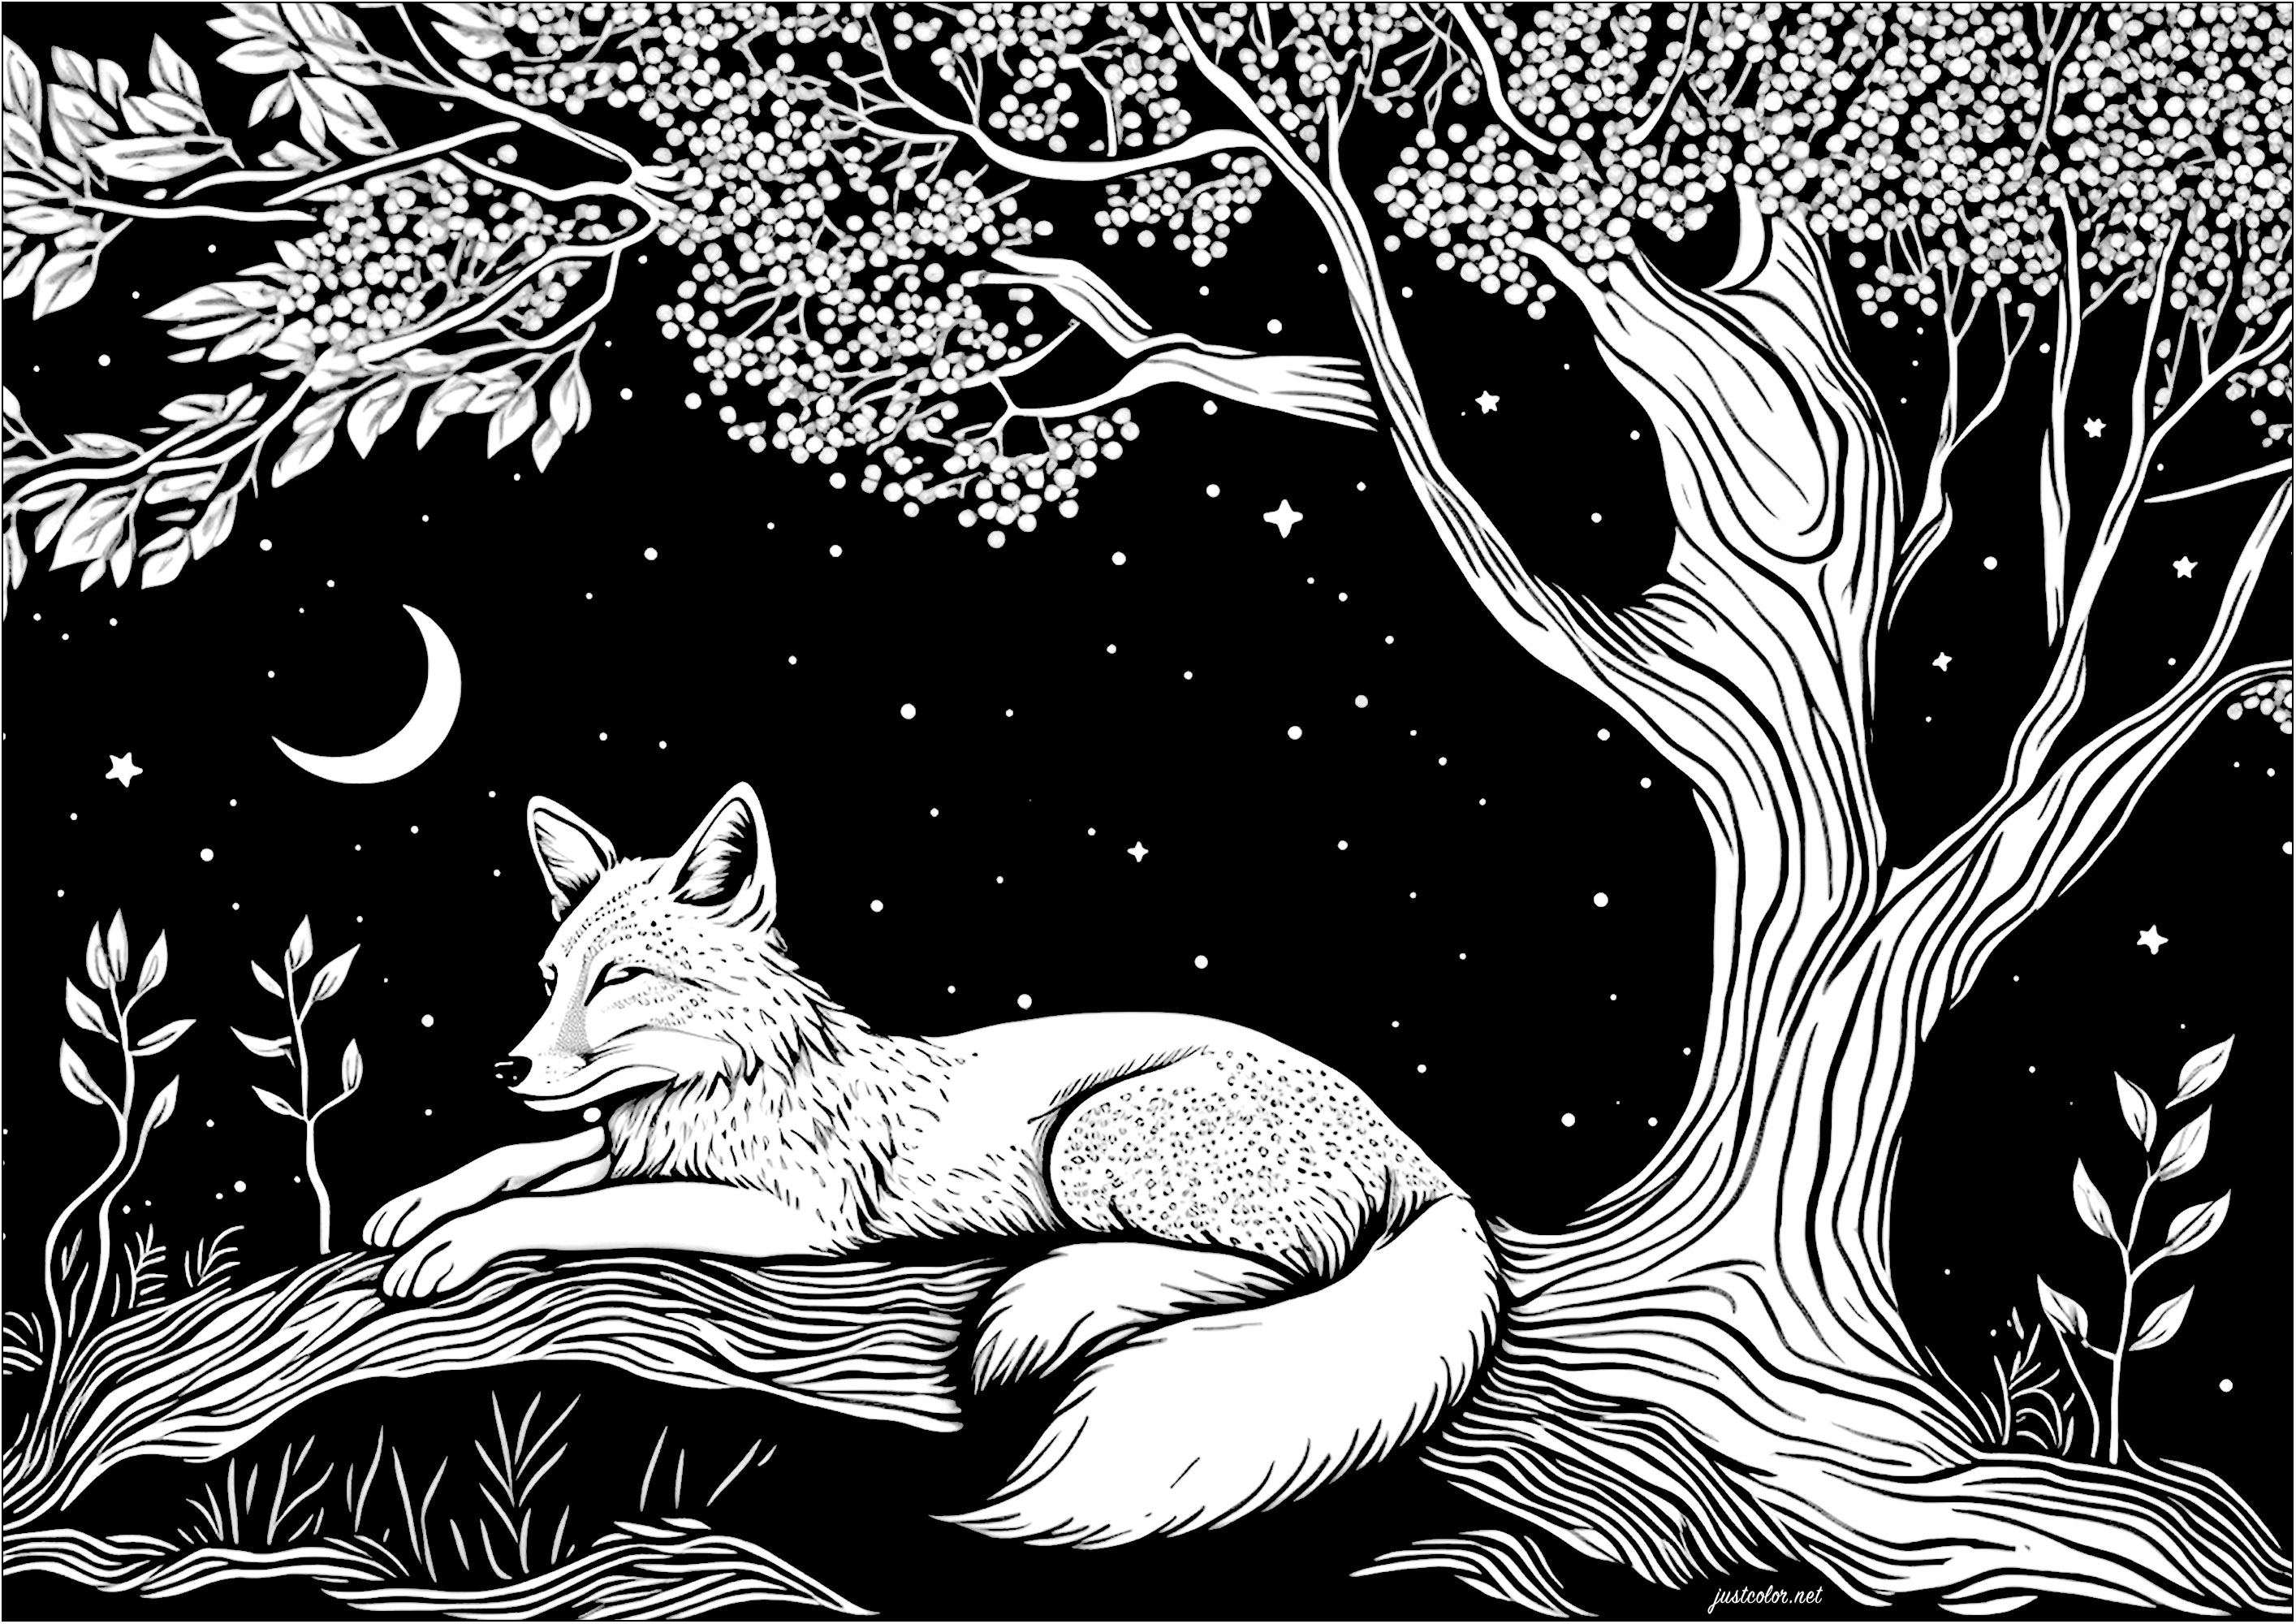 Colorear un zorro durmiendo a la luz de la luna. Es una noche clara y tranquila, y un apacible zorro duerme bajo un árbol y las estrellas. Le rodea un cielo estrellado y un cuarto de luna.